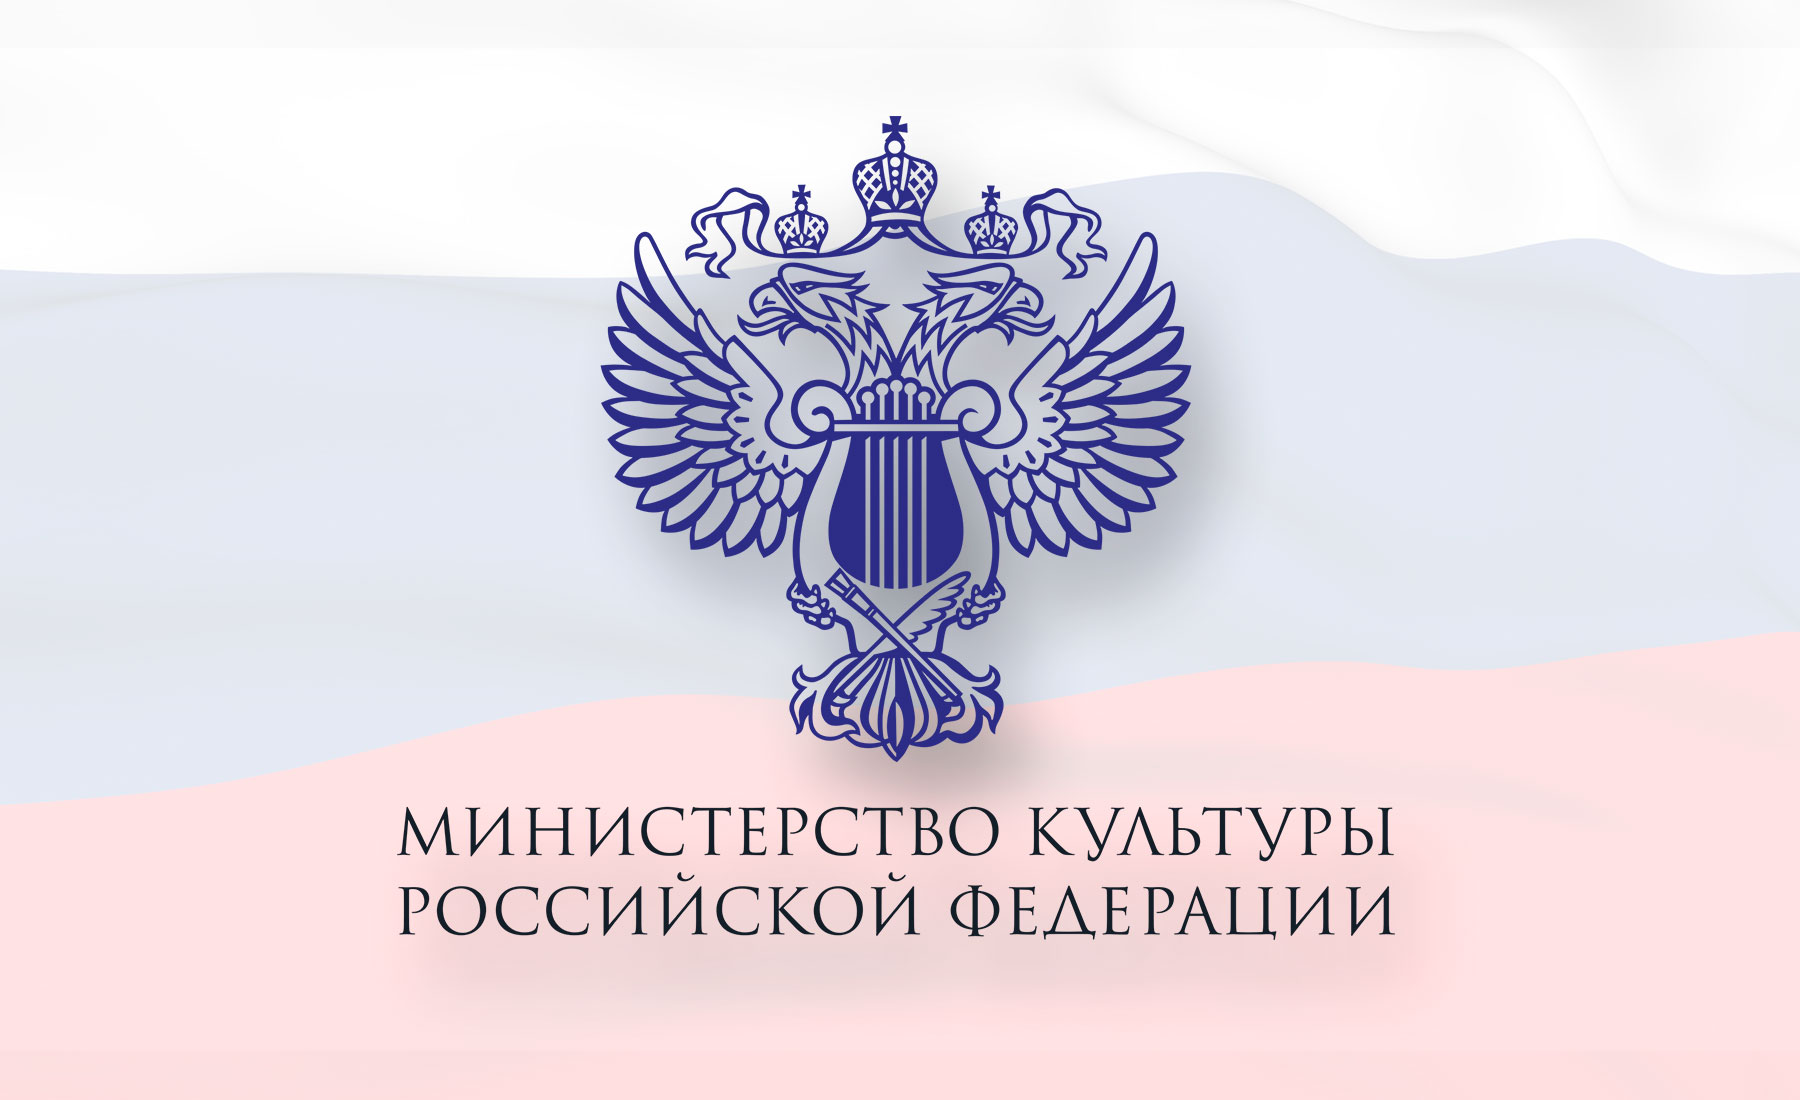 Министерство культуры Российской Федерации объявило приём заявок на соискание премии «Душа России»